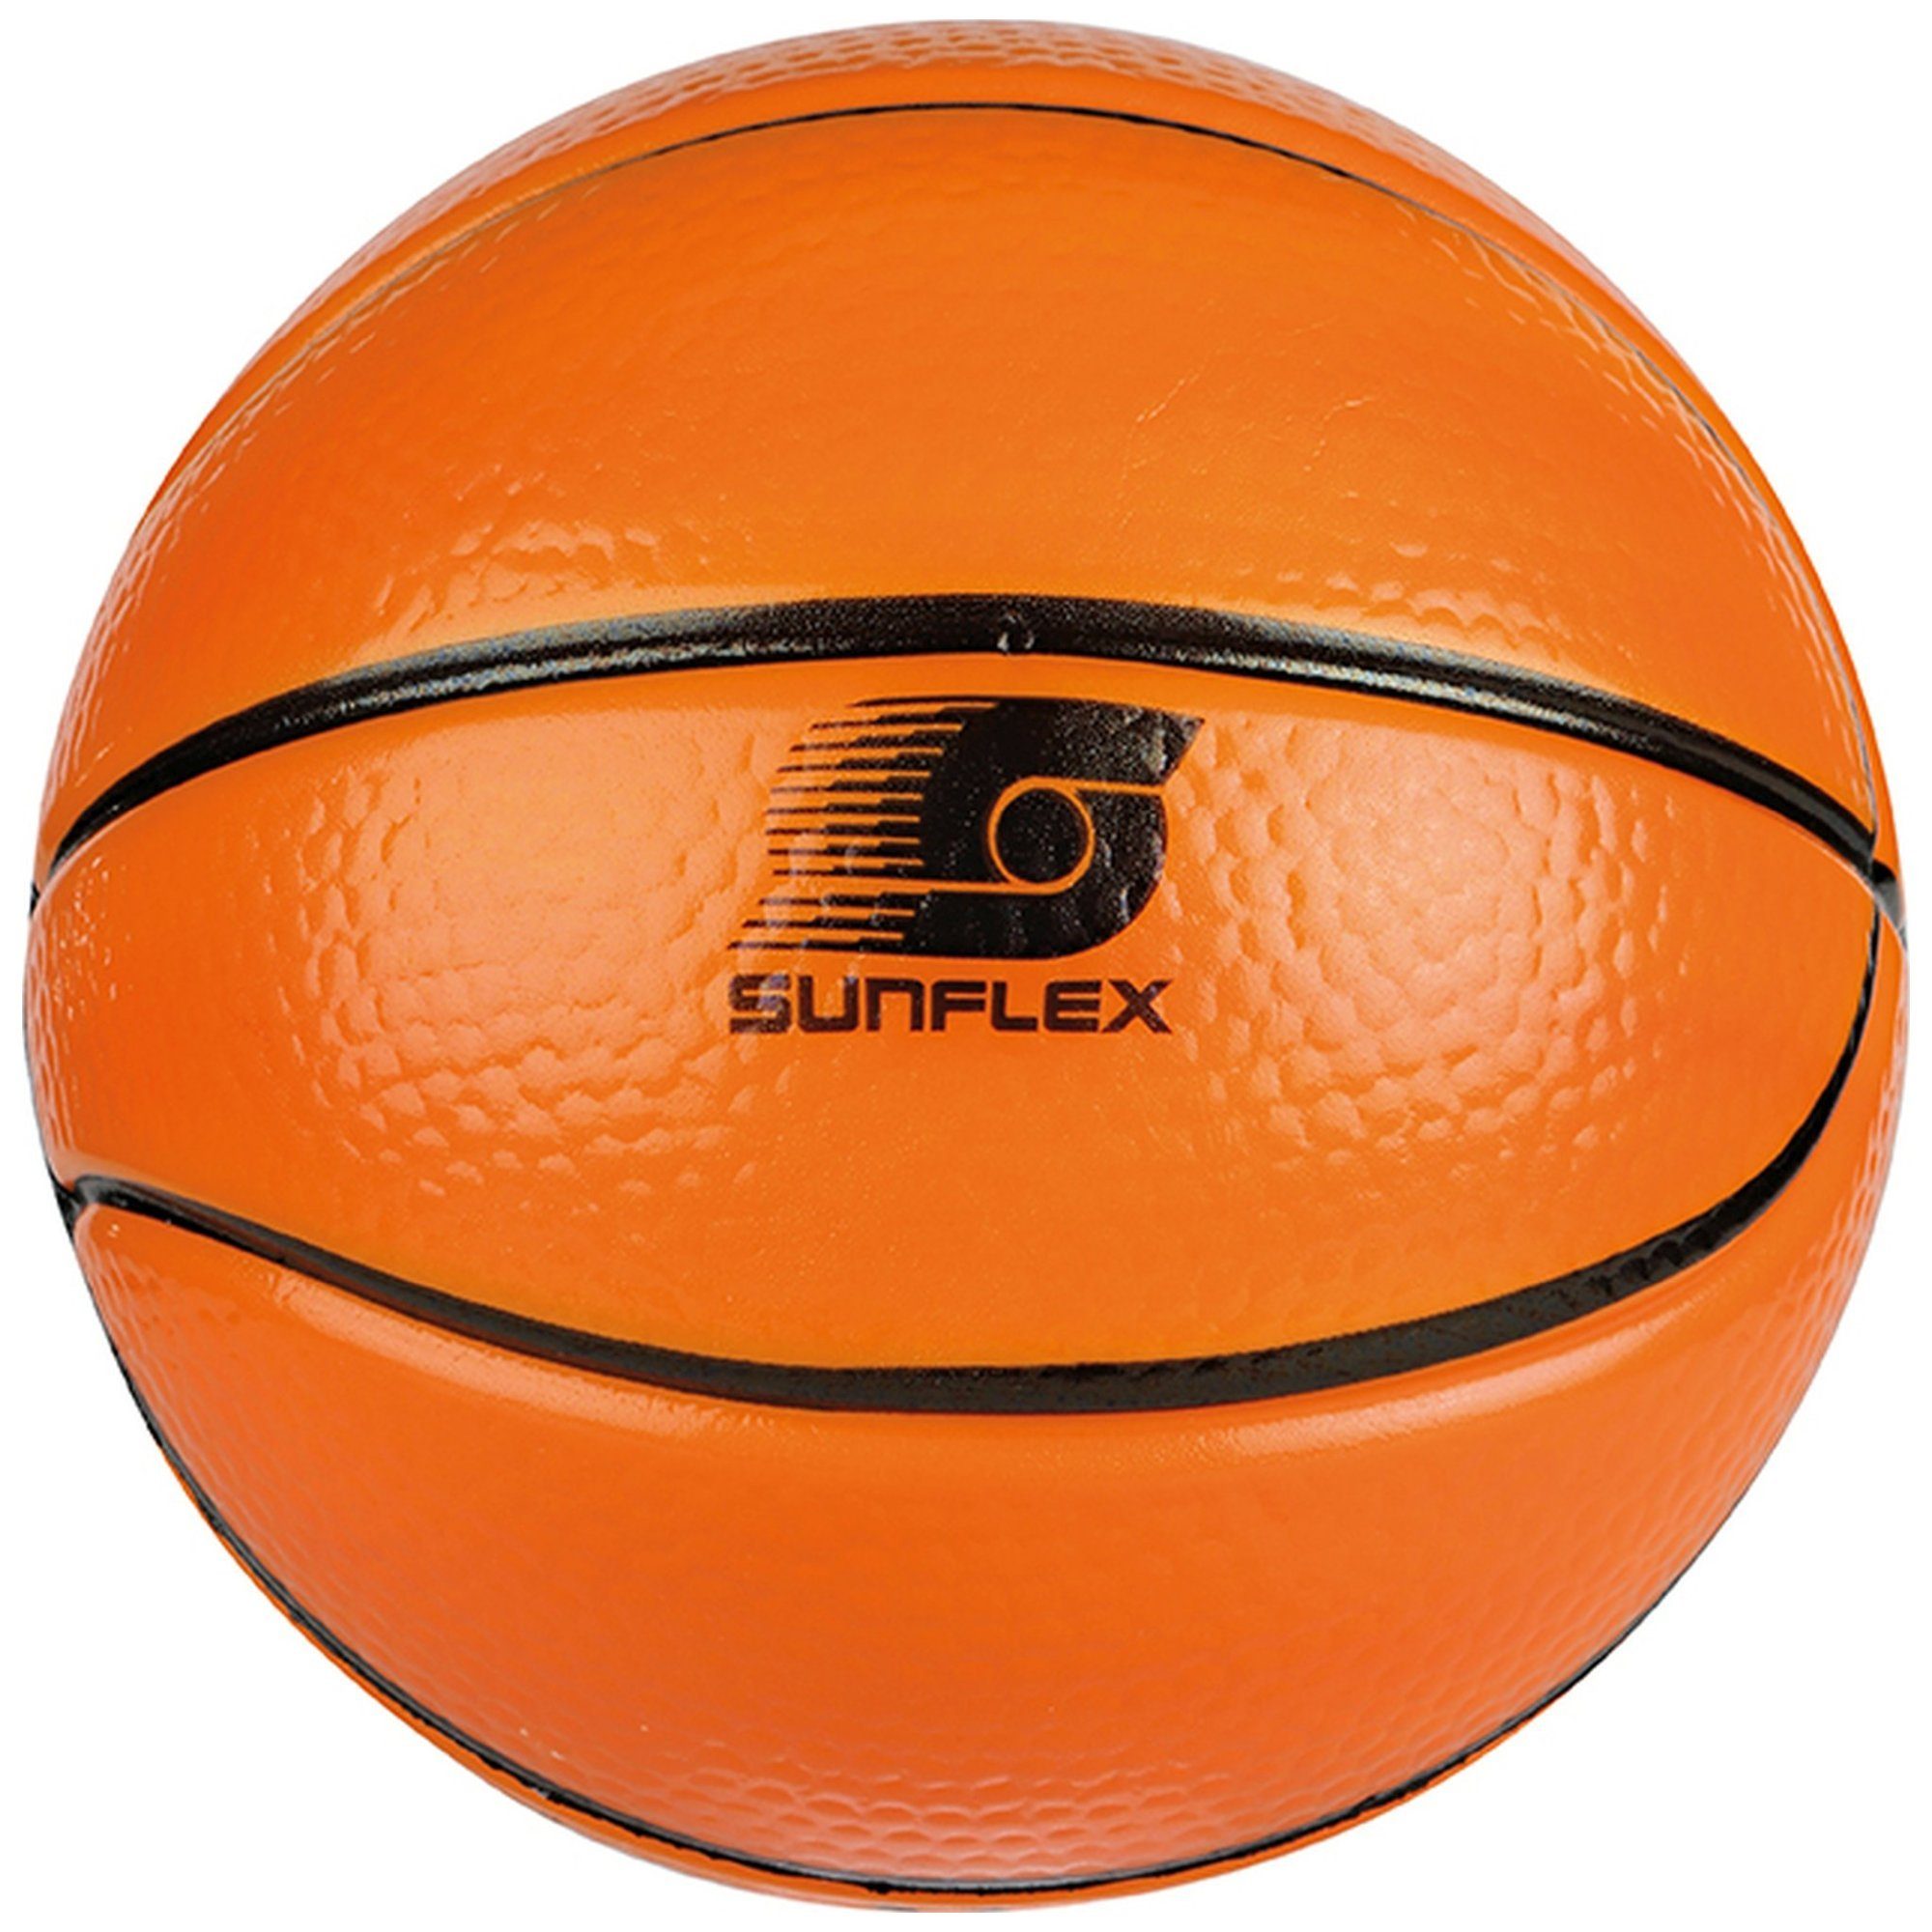 Sunflex Basketball Basketball sunflex Softball